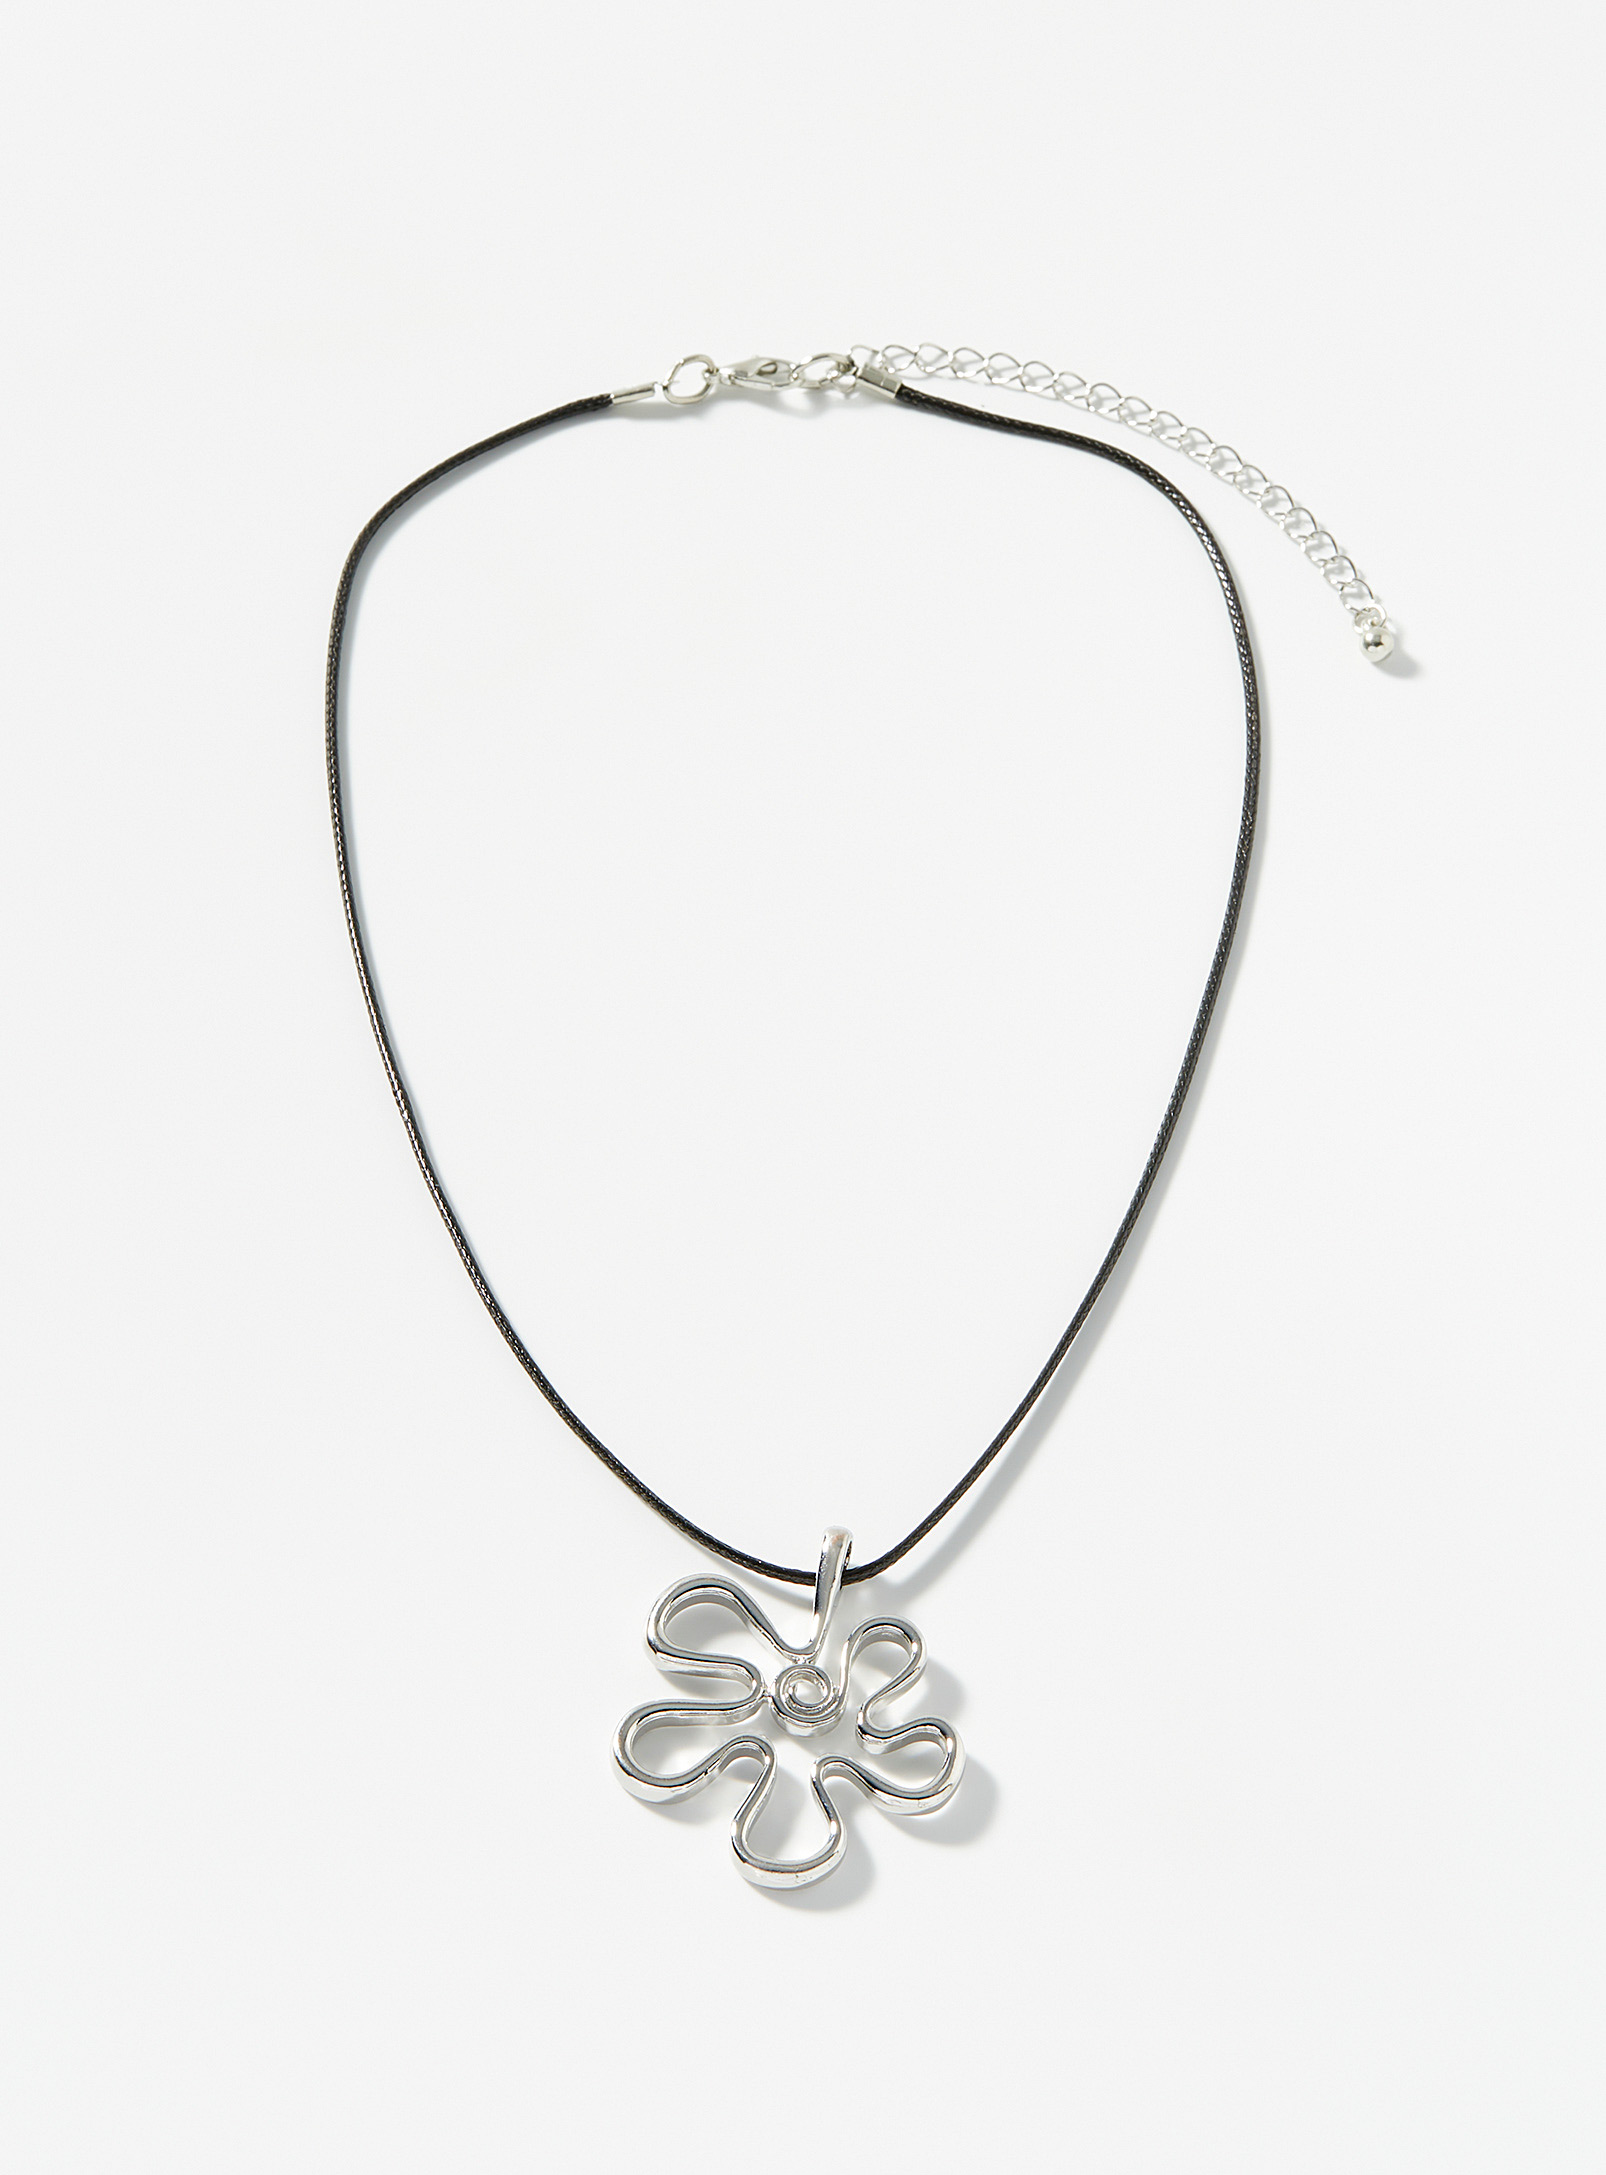 Simons - Le collier corde fleur métallique abstraite